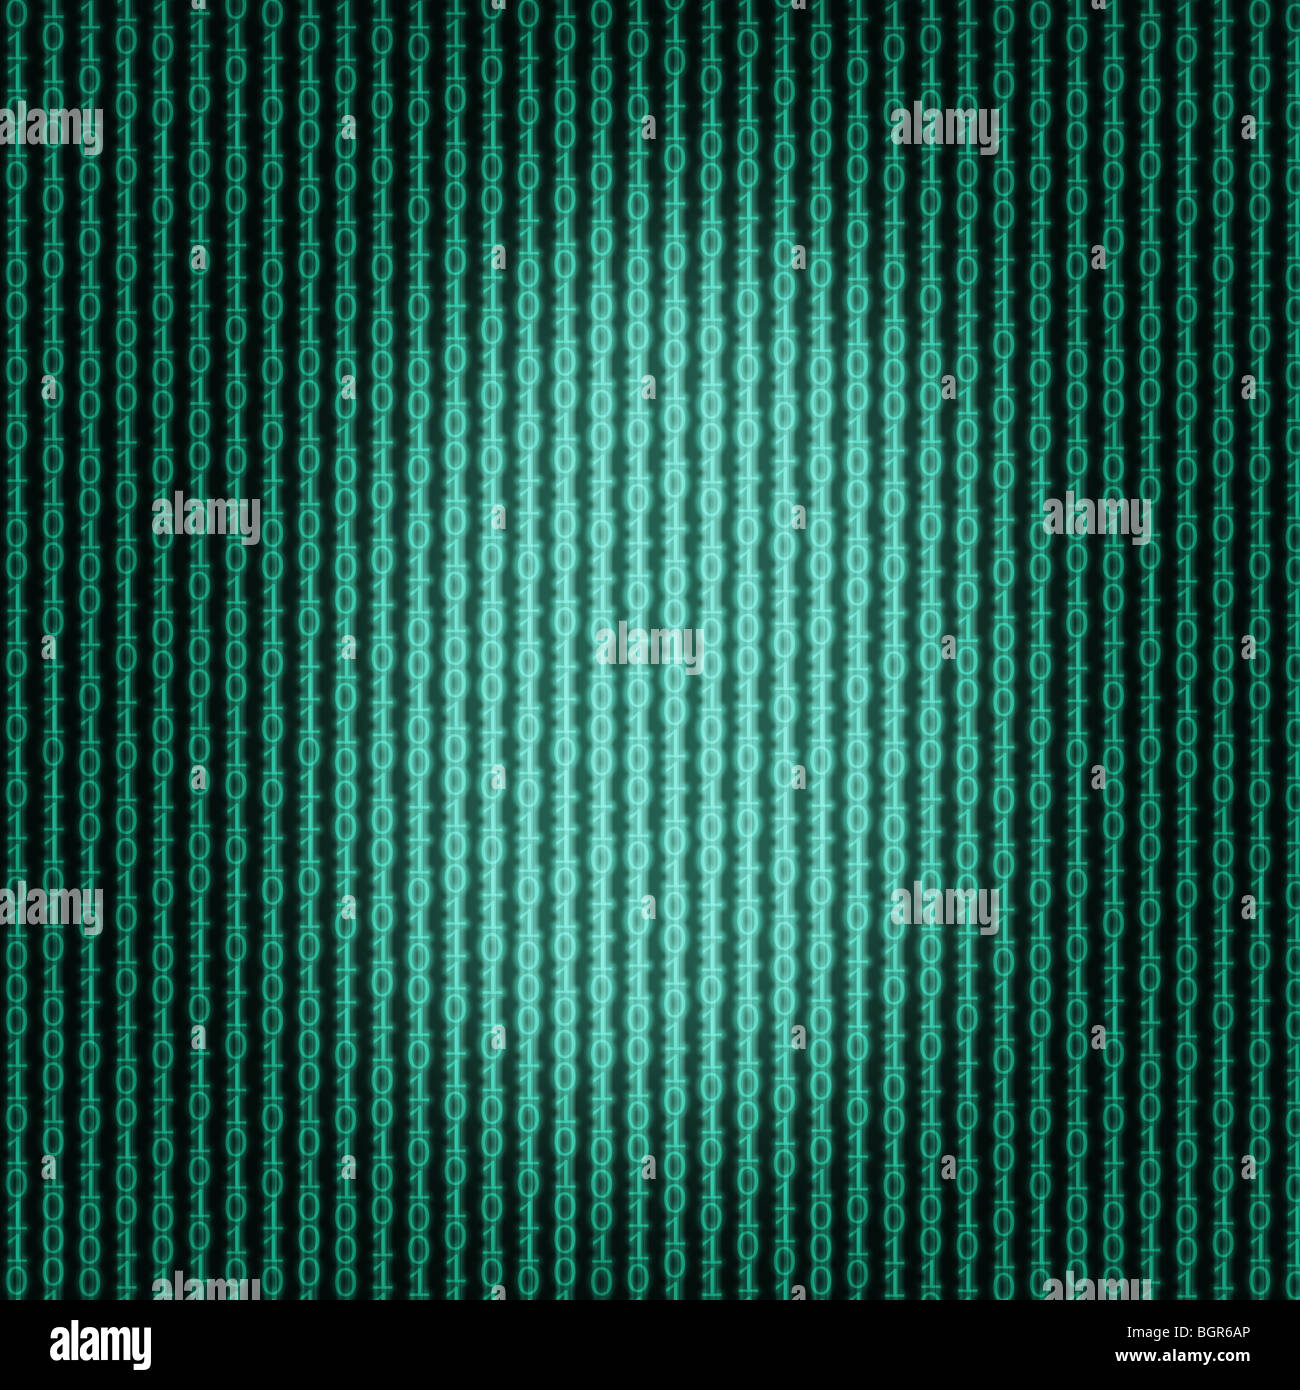 Composición digital de datos binarios que fluye verticalmente Foto de stock